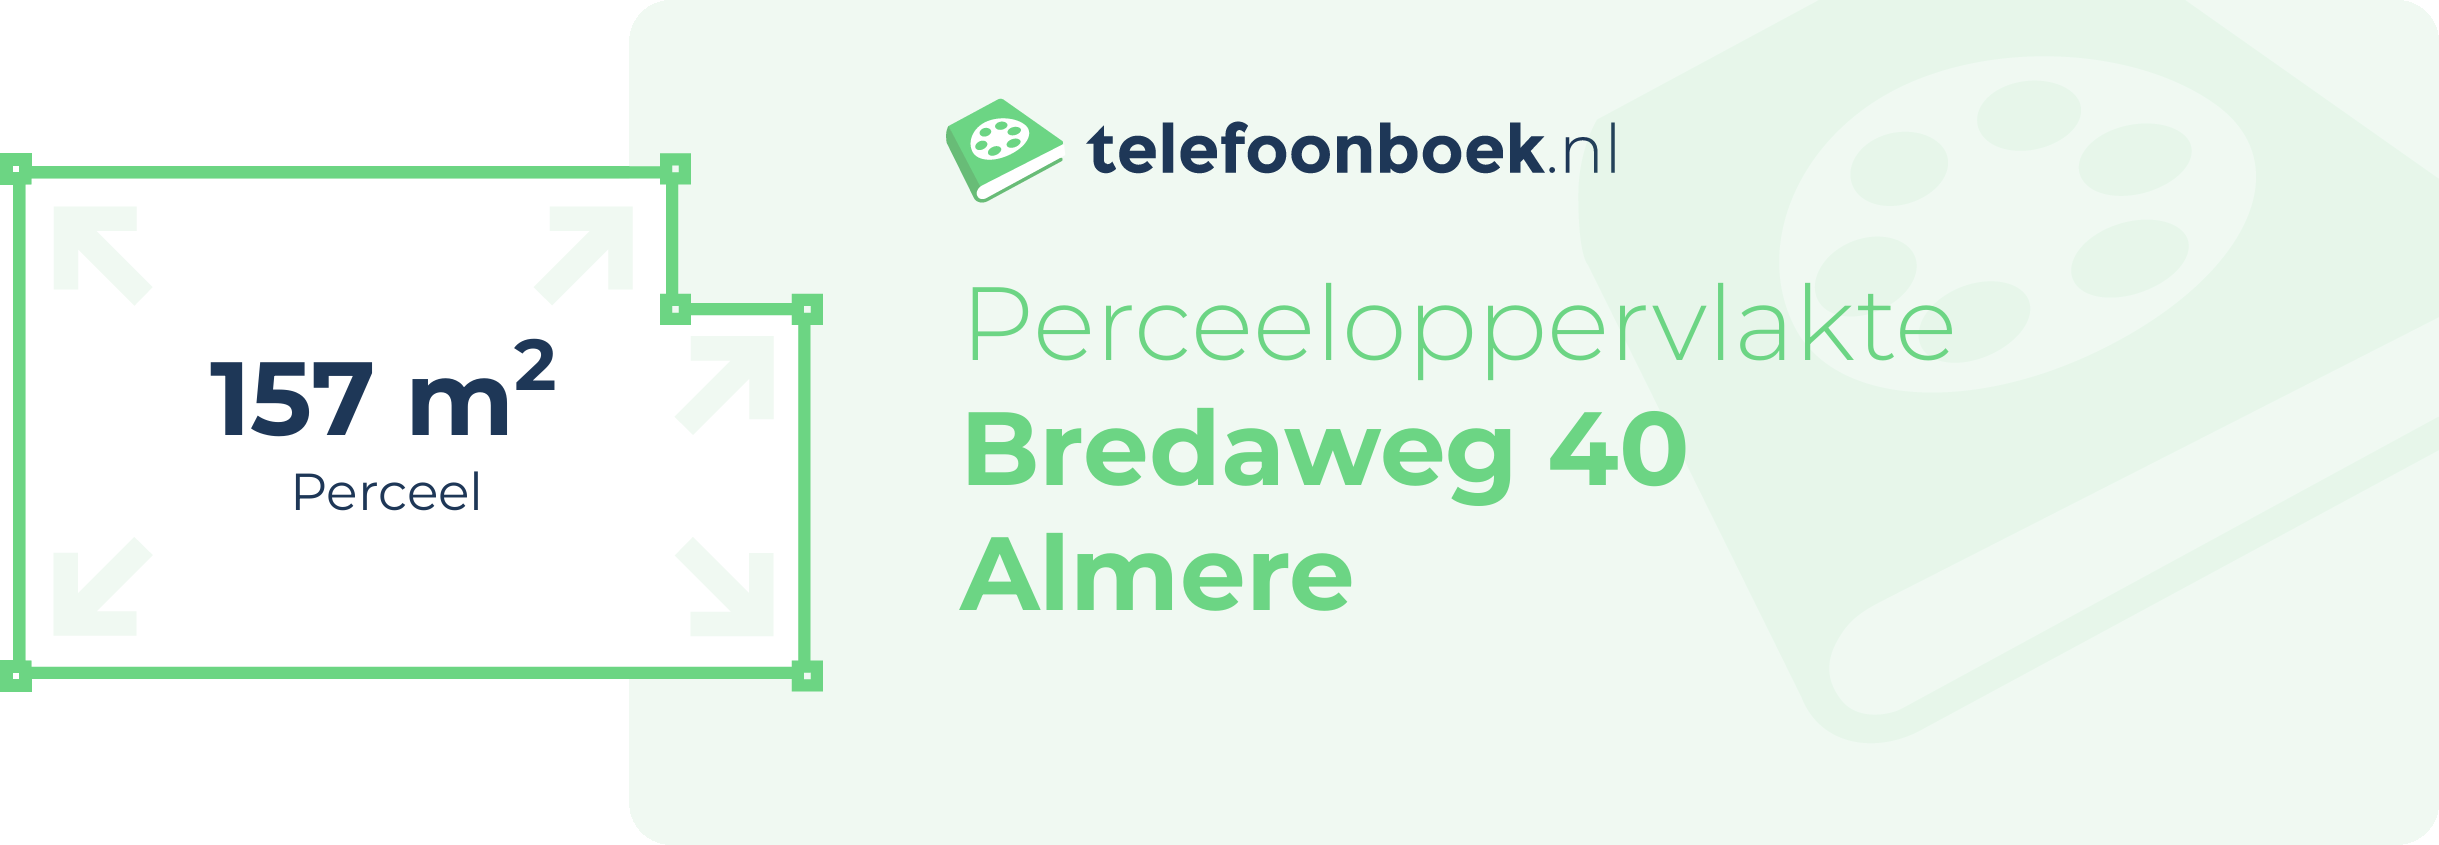 Perceeloppervlakte Bredaweg 40 Almere